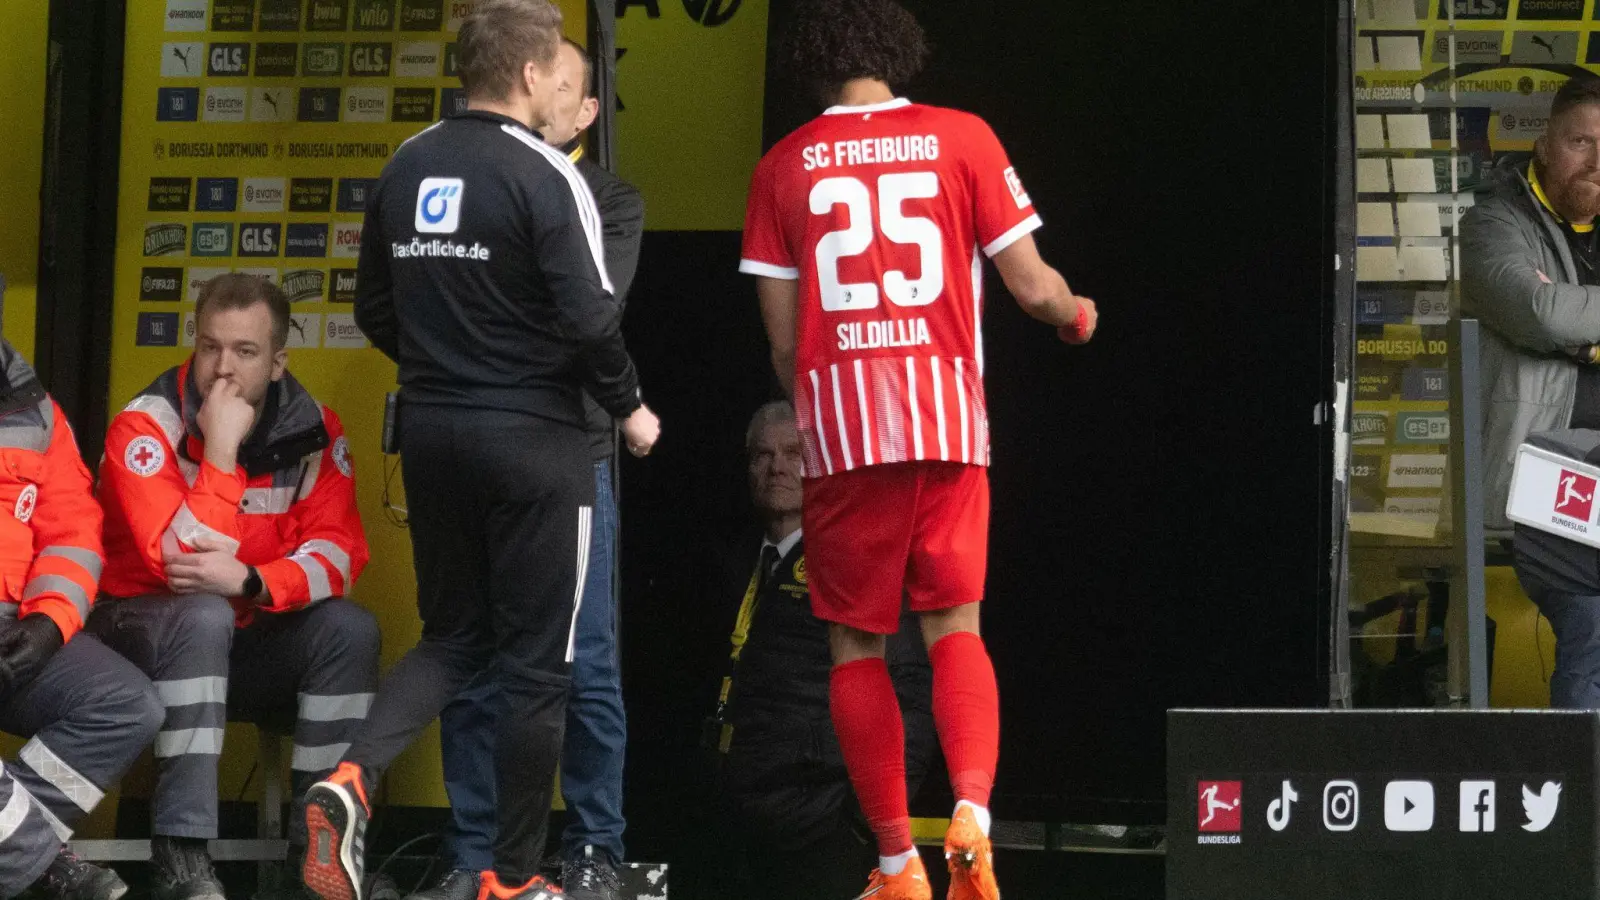 Freiburgs Kiliann Sildillia (r) musste beim Spiel in Dortmund schon in der 17. Minute mit Gelb-Rot vom Platz. (Foto: Bernd Thissen/dpa)